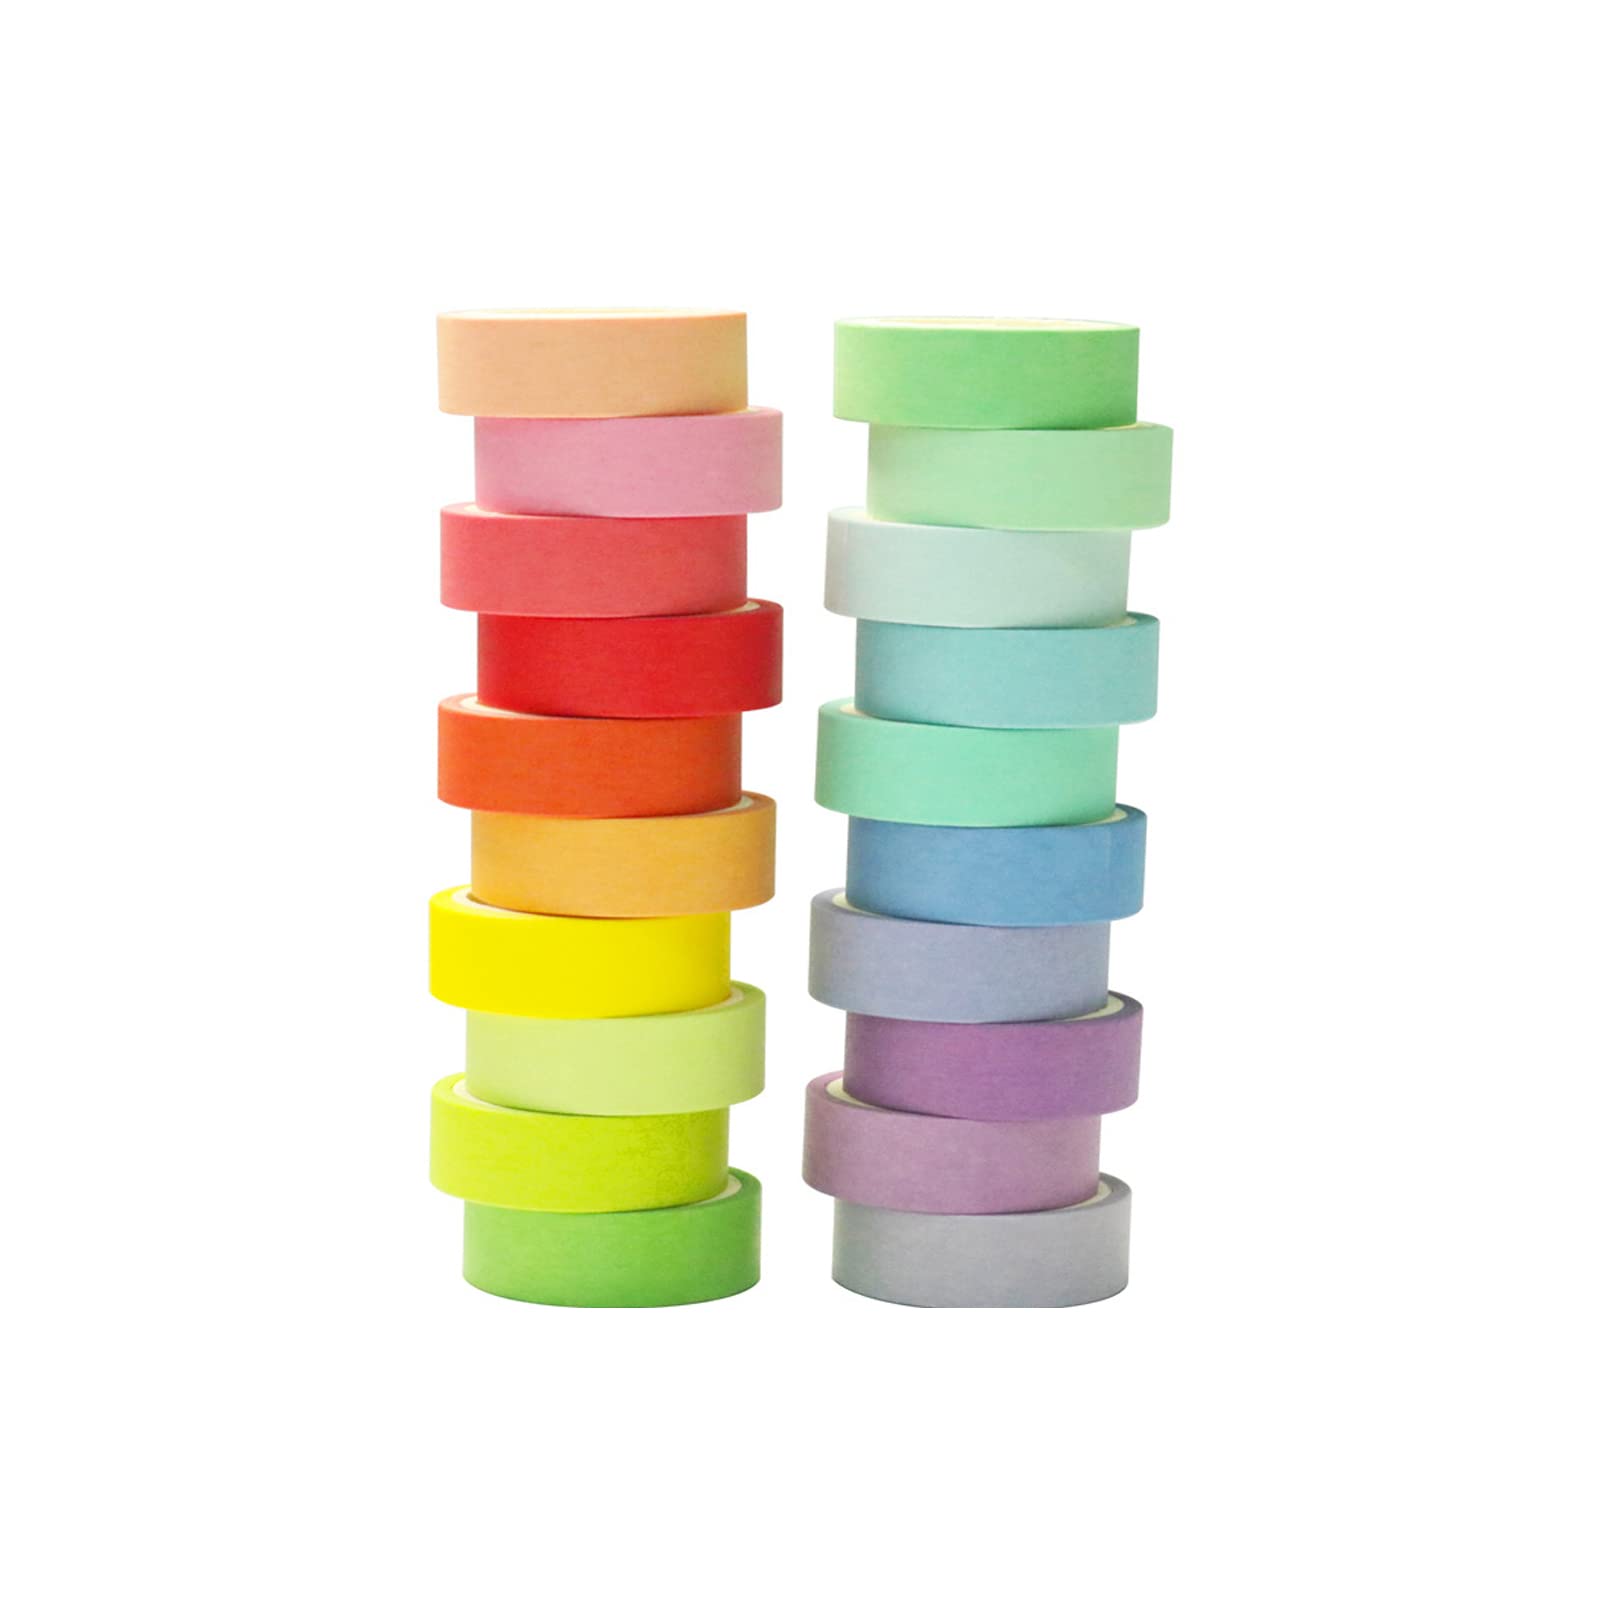 20 Rolls Washi Masking Tape Set, 3mm 110 Yards Colorful Rainbow Pastel Washi Tape Set, Skinny Thin Decorative Colored Washi Craft Tape for Bullet